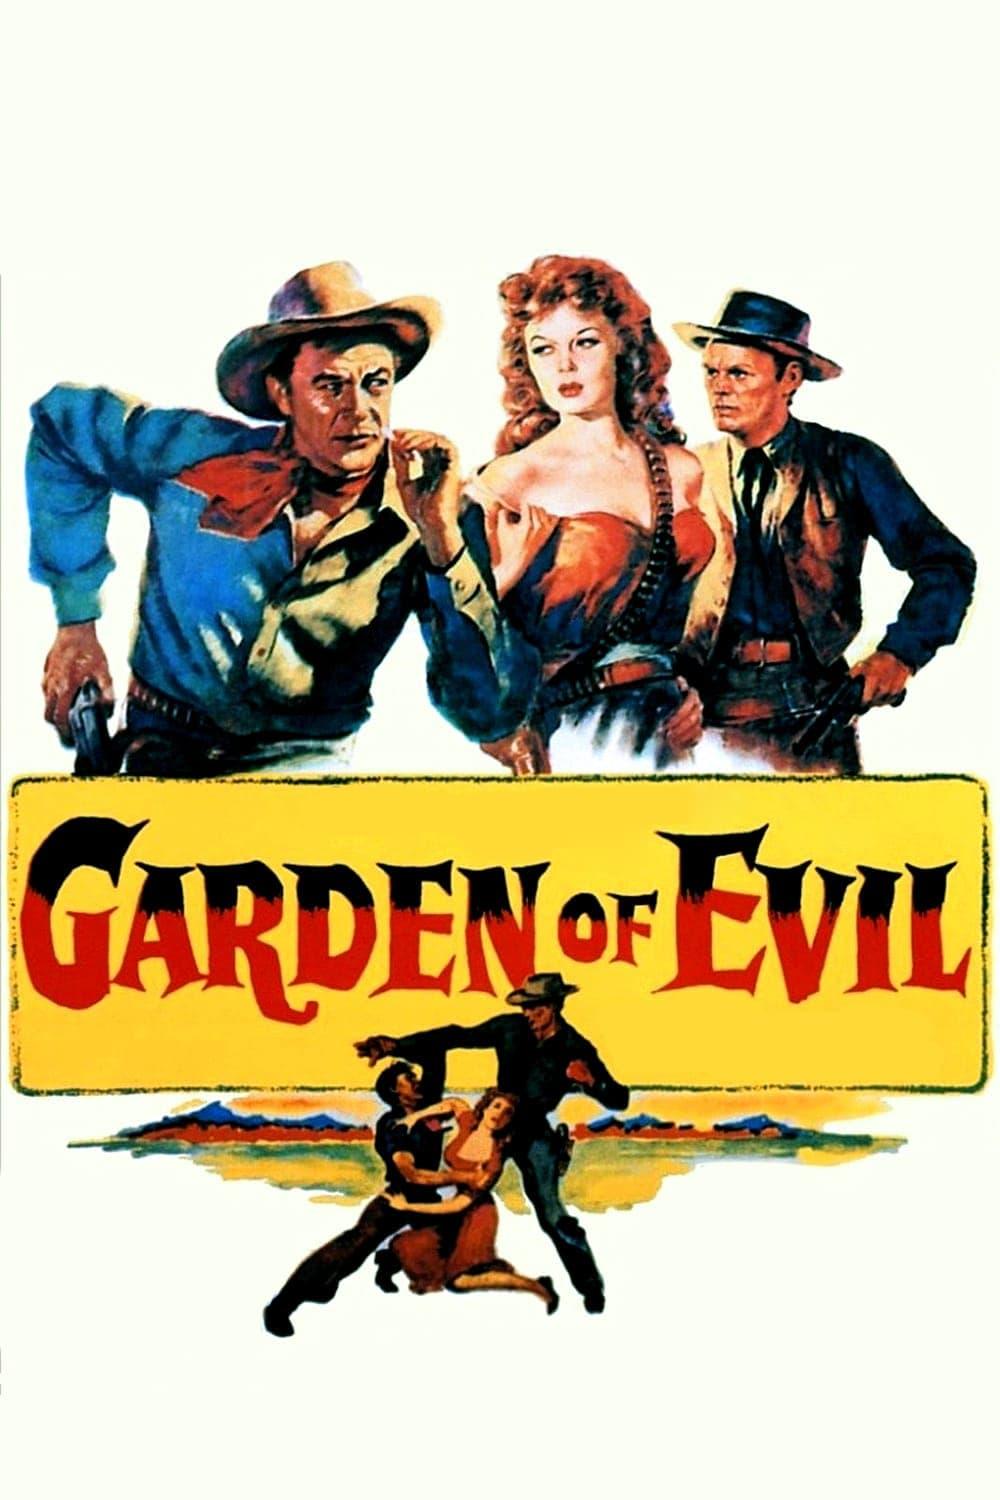 Garden of Evil poster